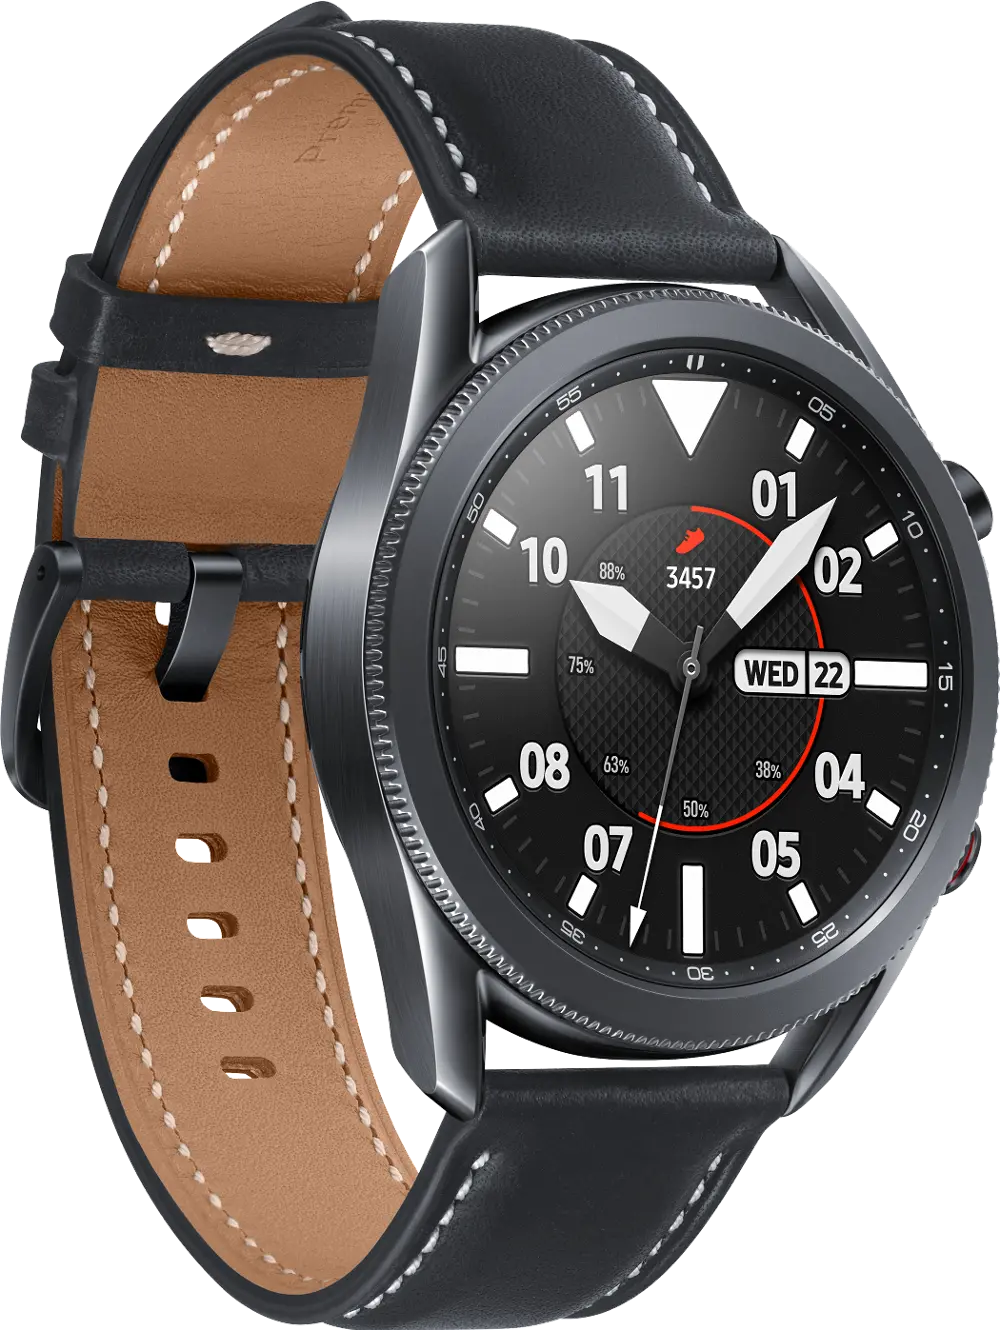 SM-R840NZKAXAR Samsung Galaxy Watch3 45mm - Black-1